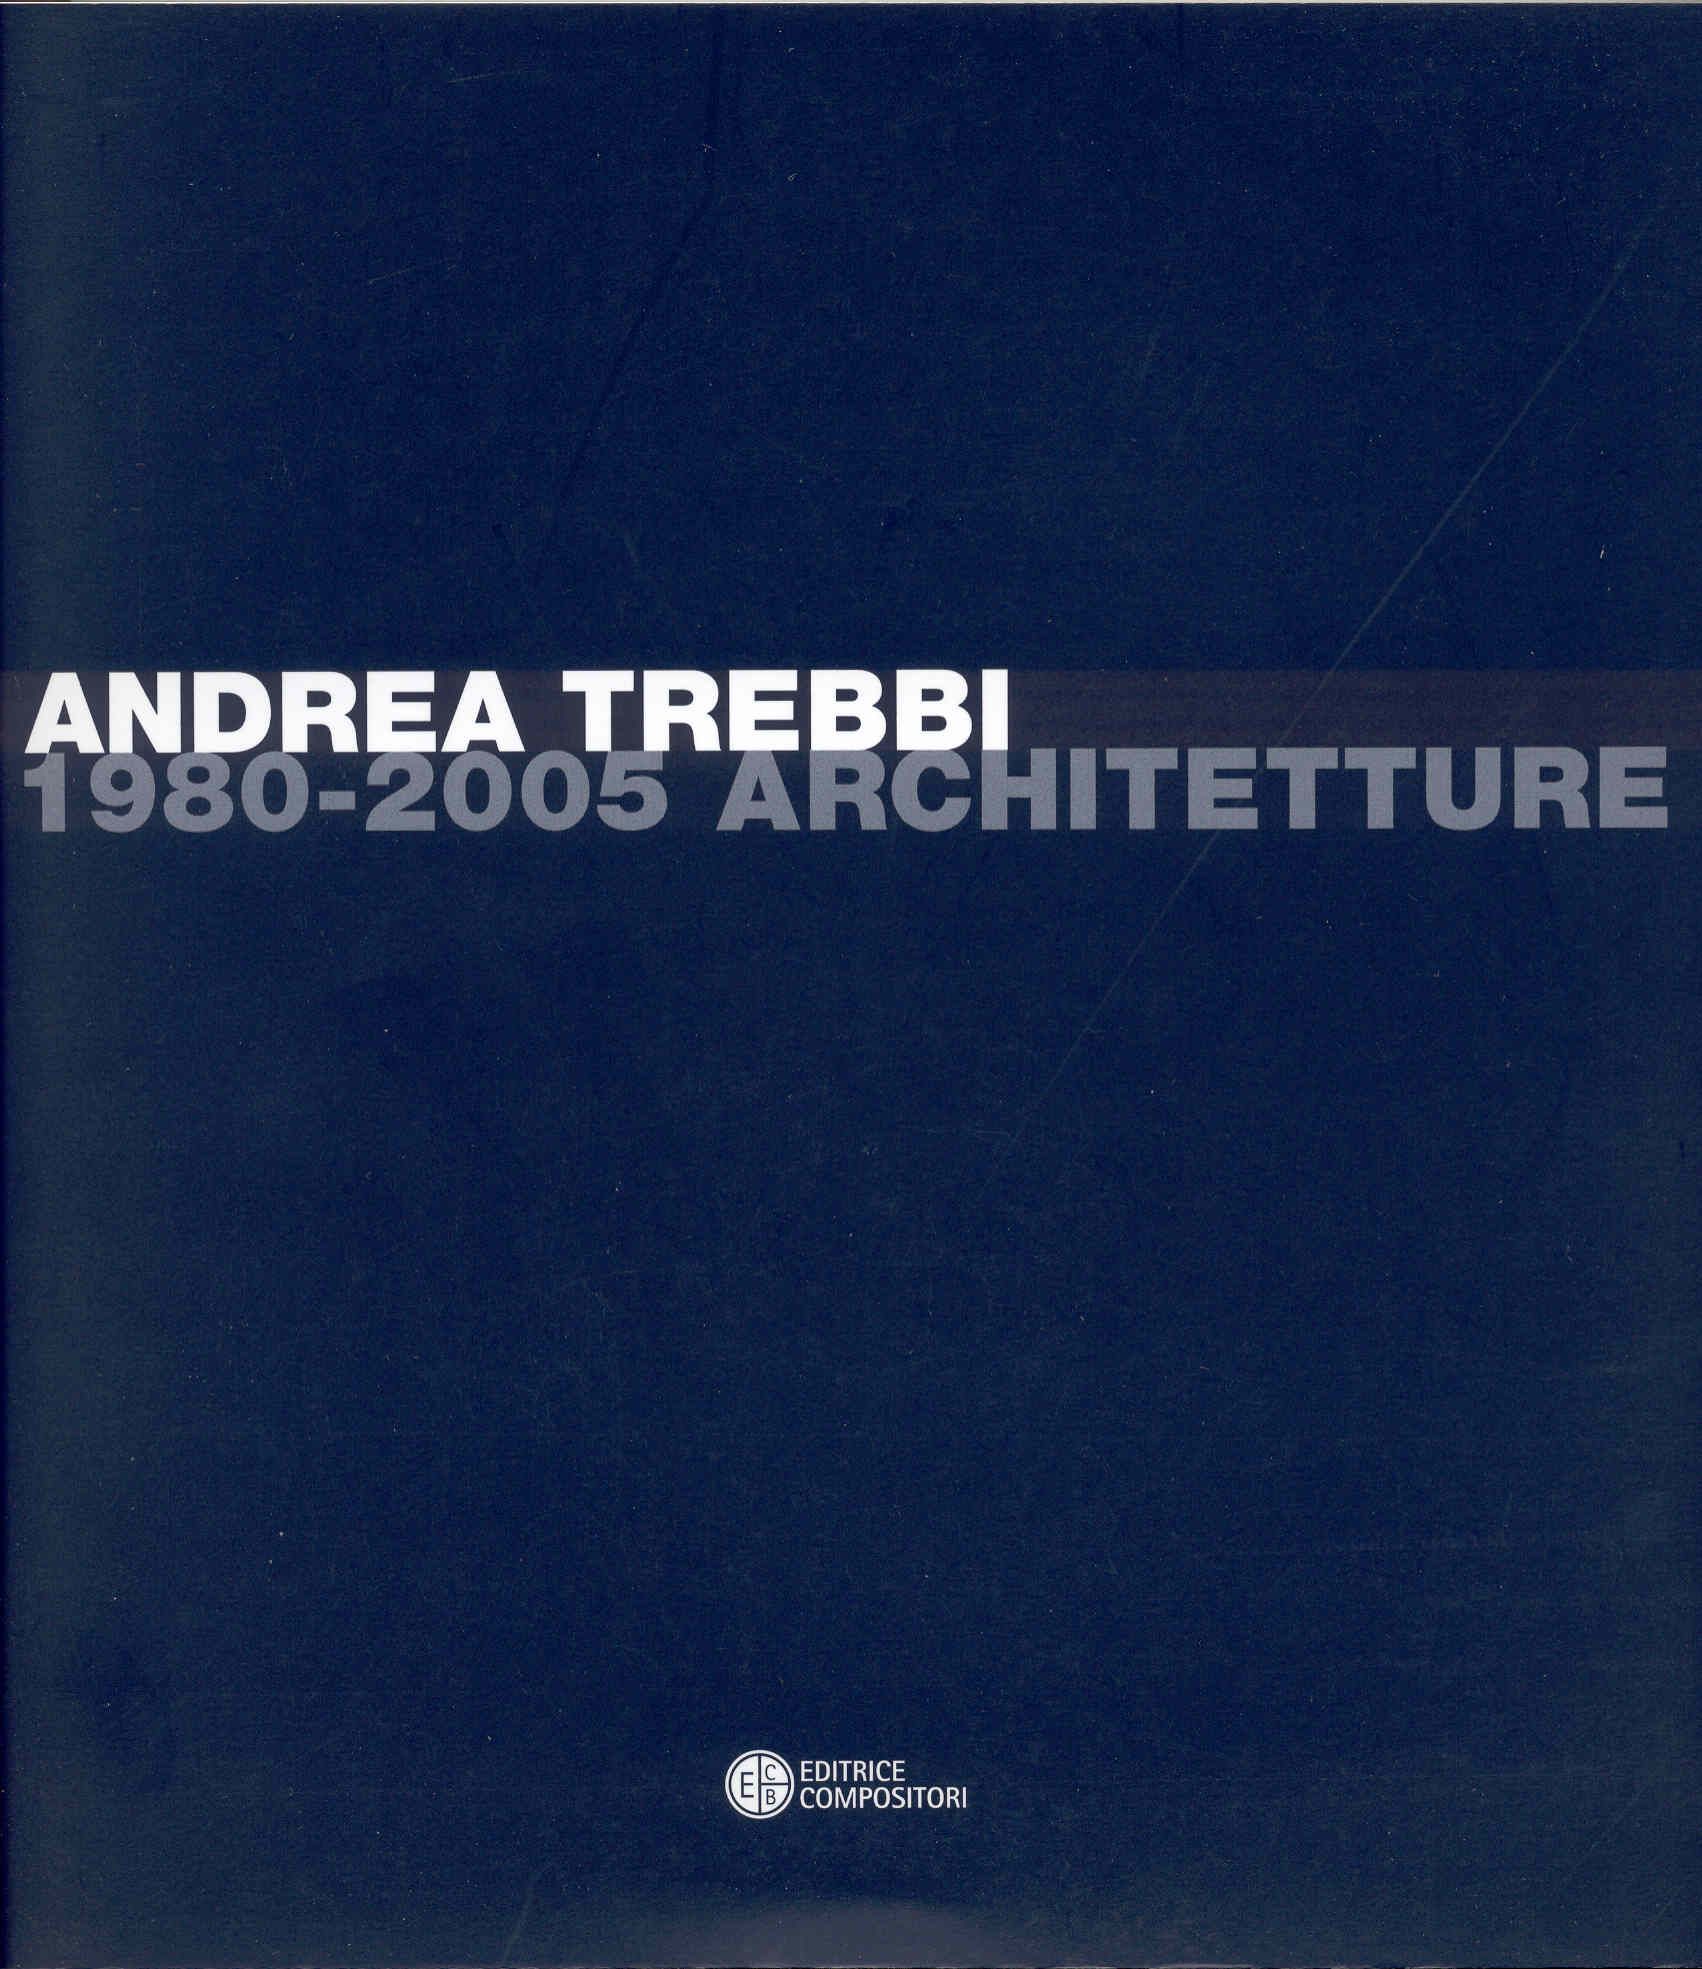 Andrea Trebbi Architetto